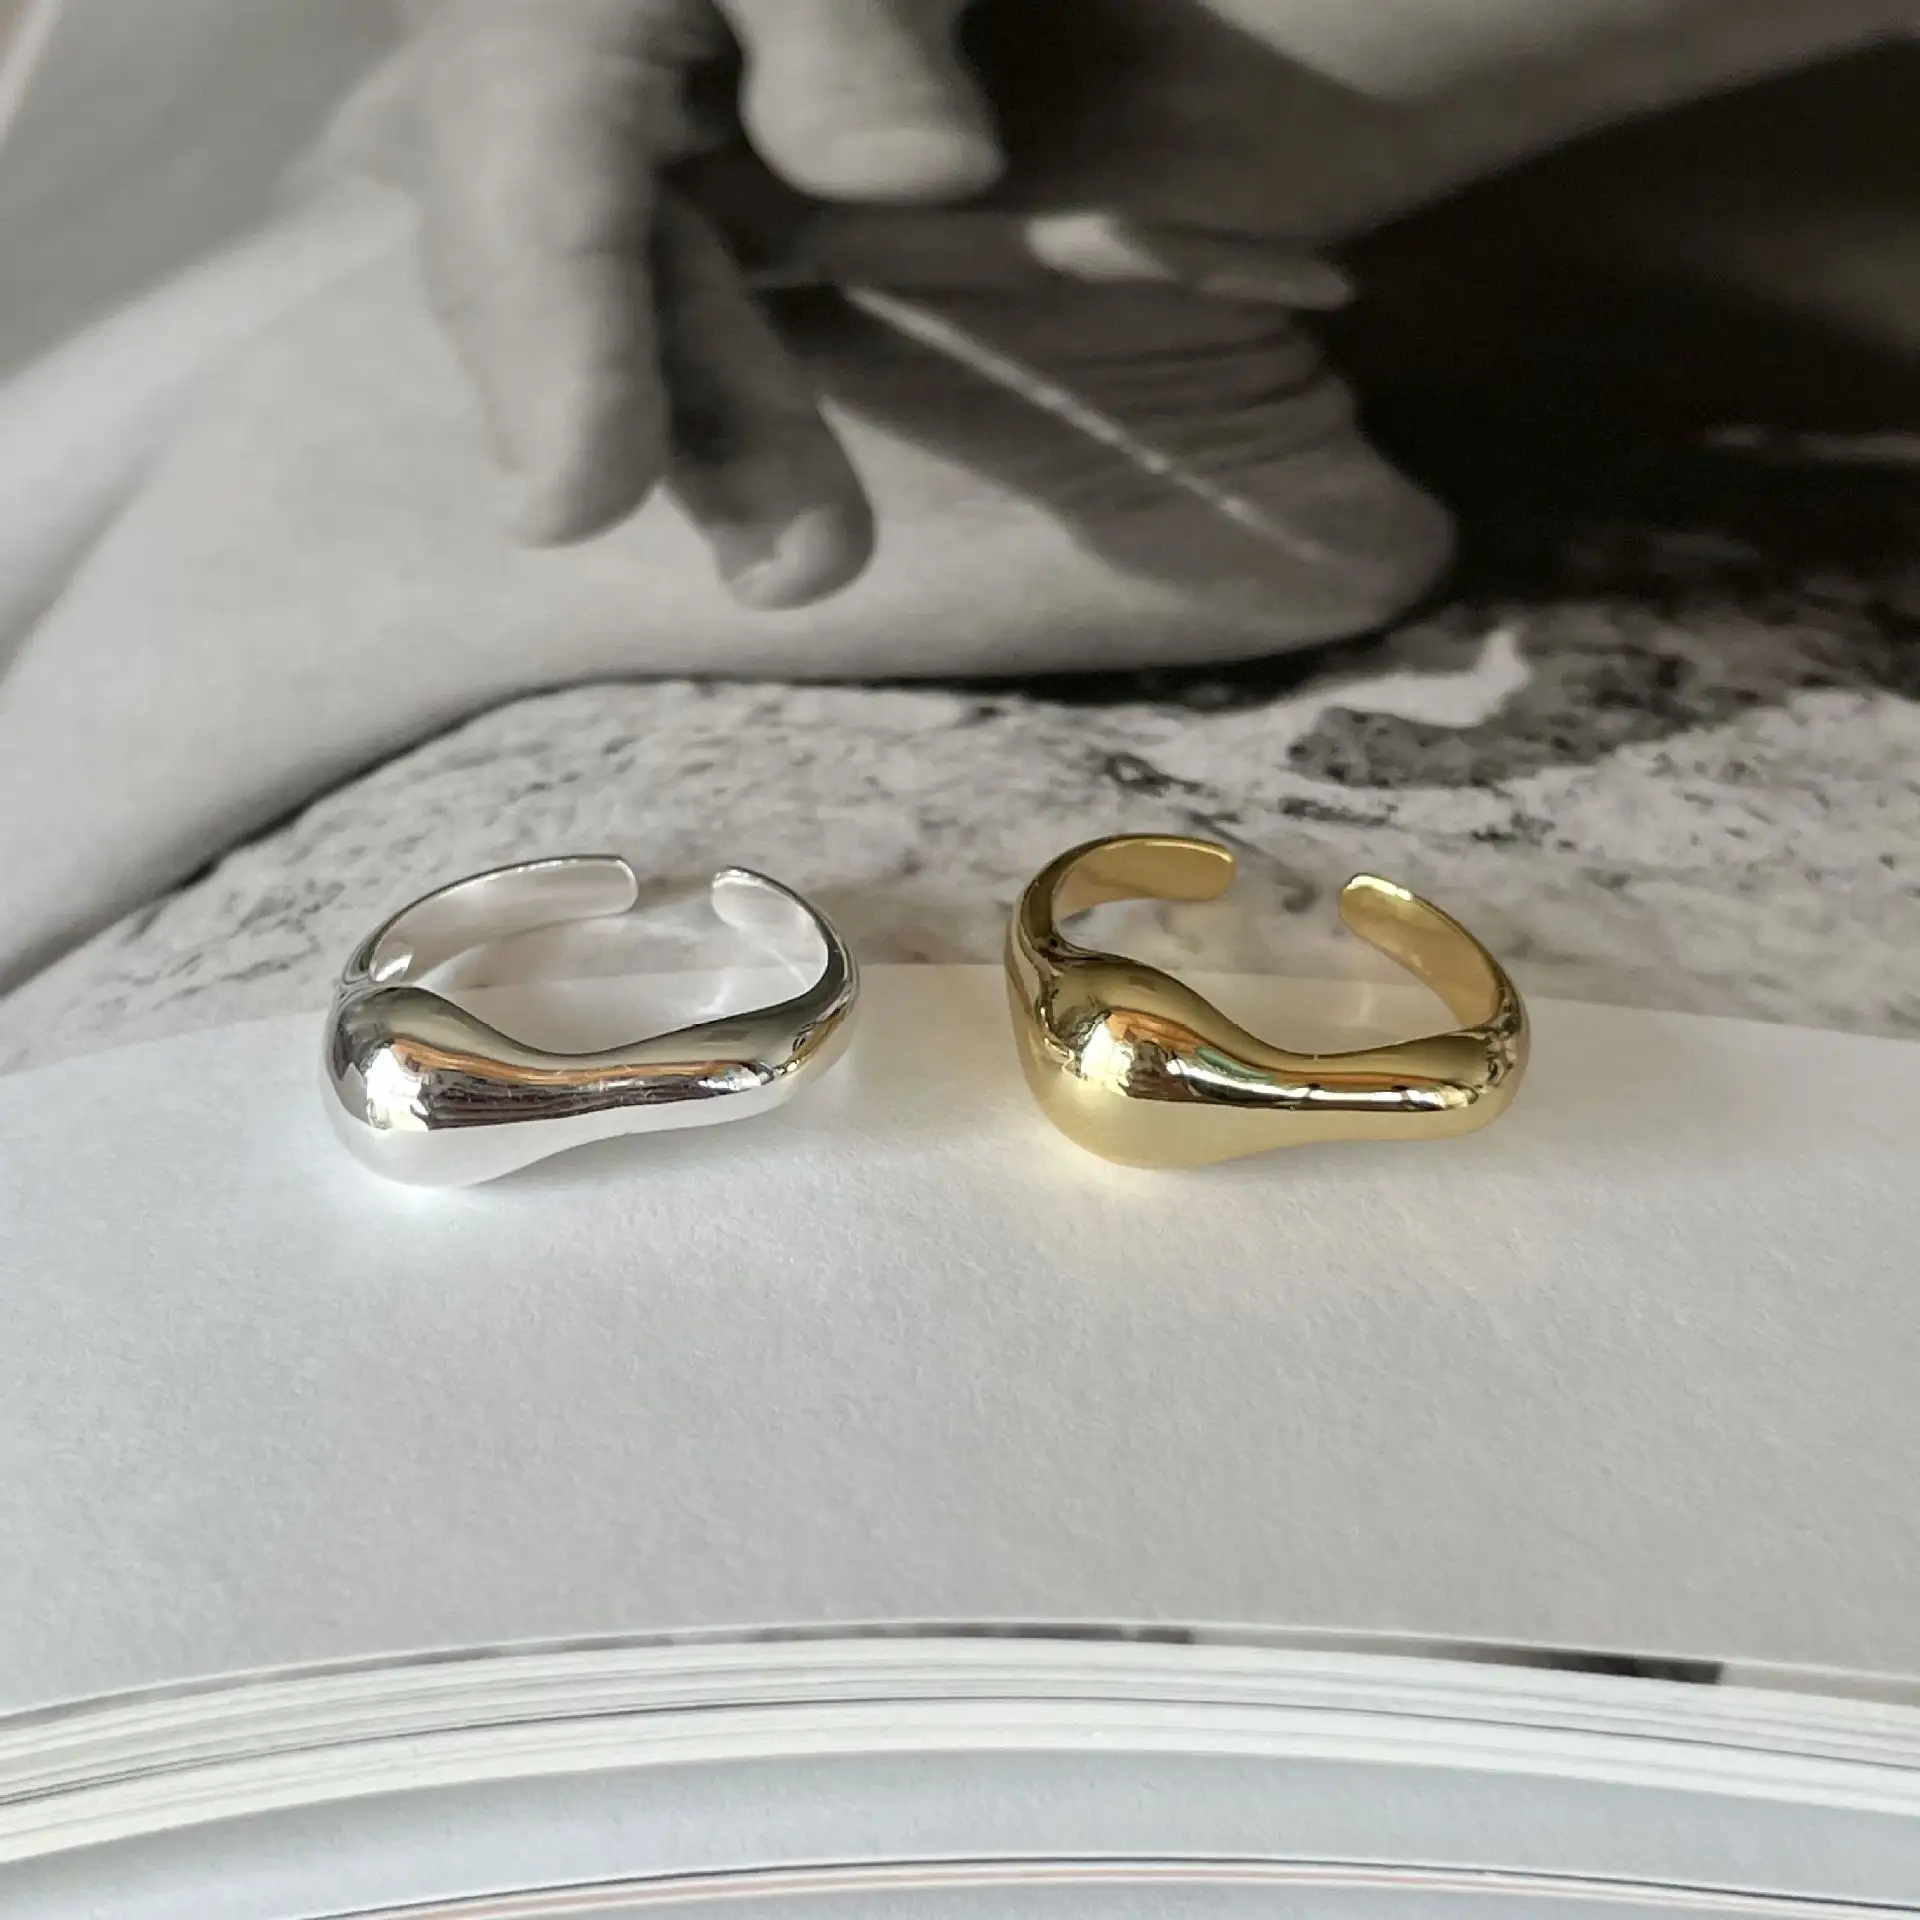 Joyever ชุดแหวนสเตอร์ลิงเงิน925รูปทรงเรขาคณิตที่ไม่สม่ำเสมอสำหรับเป็นของขวัญ